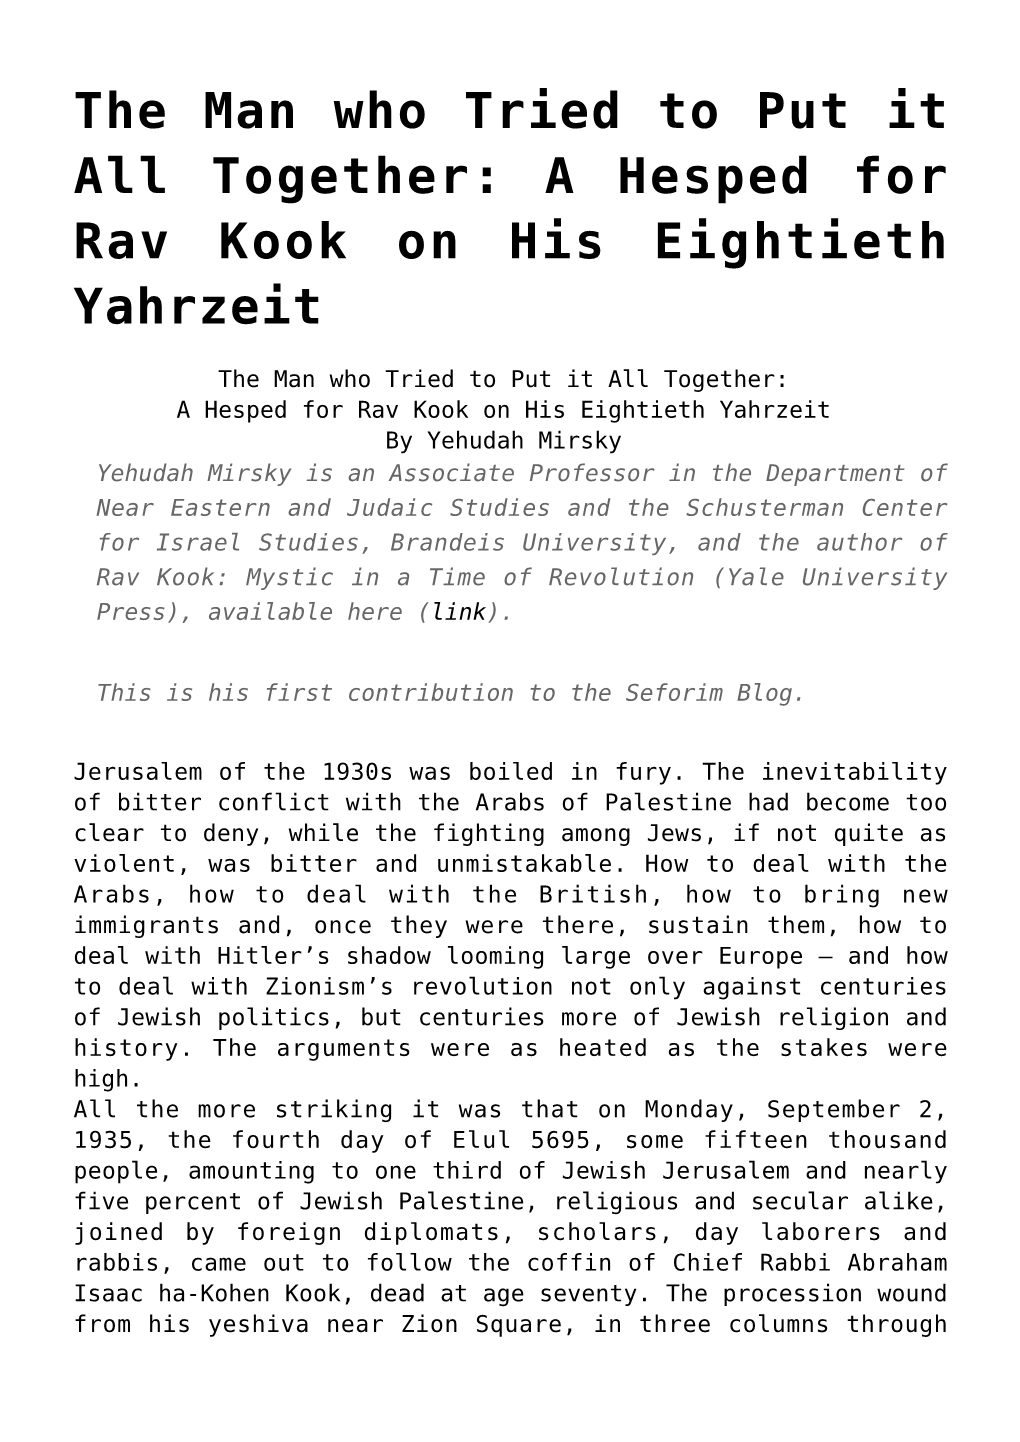 A Hesped for Rav Kook on His Eightieth Yahrzeit